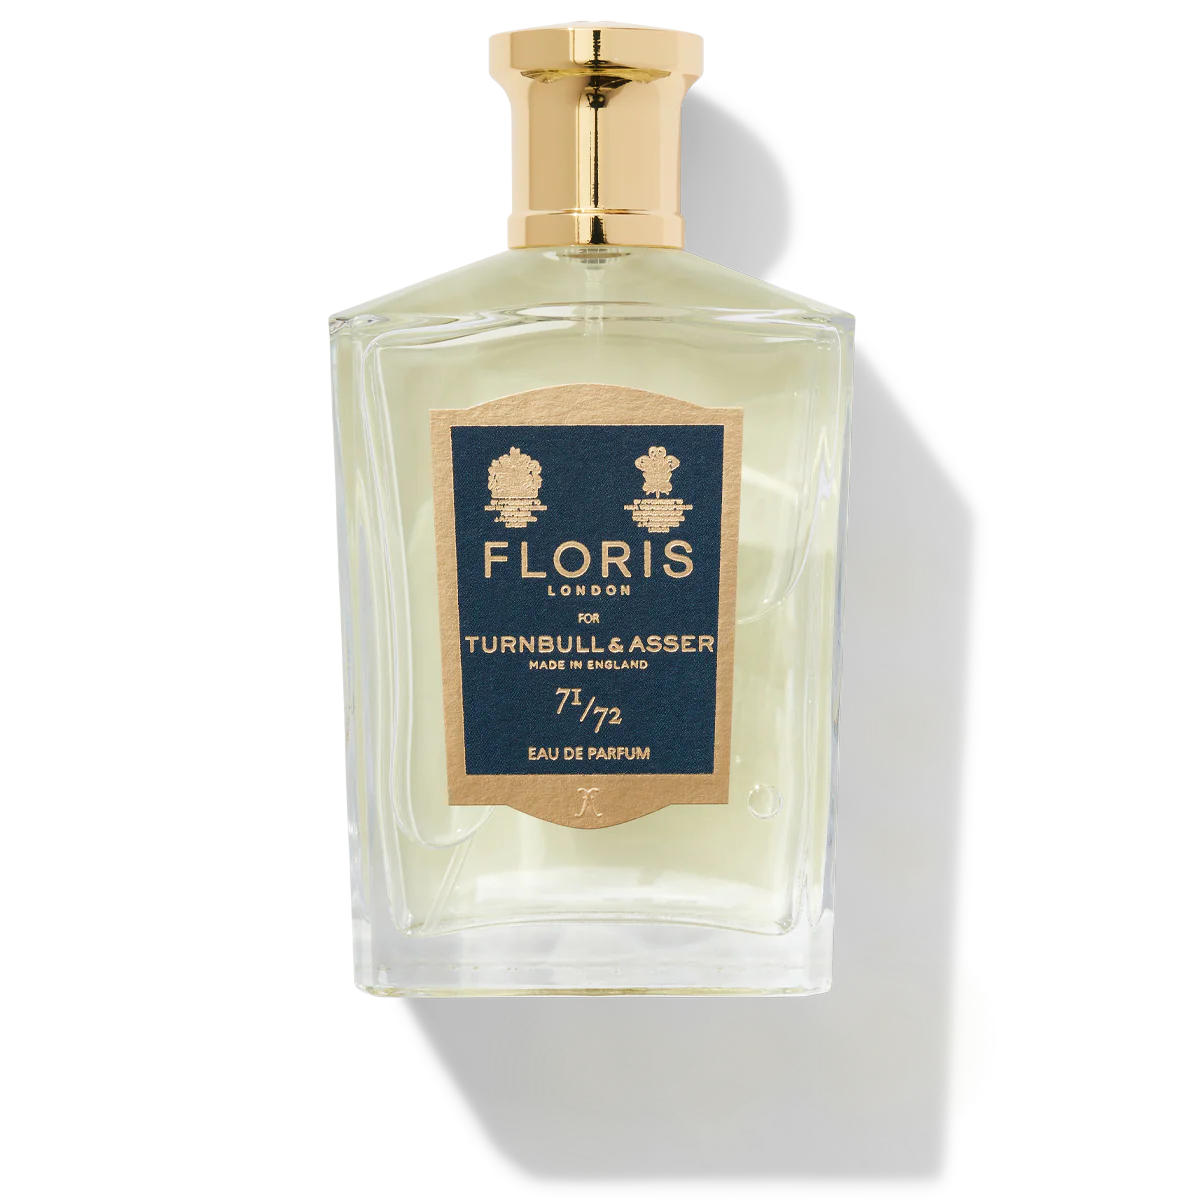 Floris London 71/72 Eau de Parfum 100ml